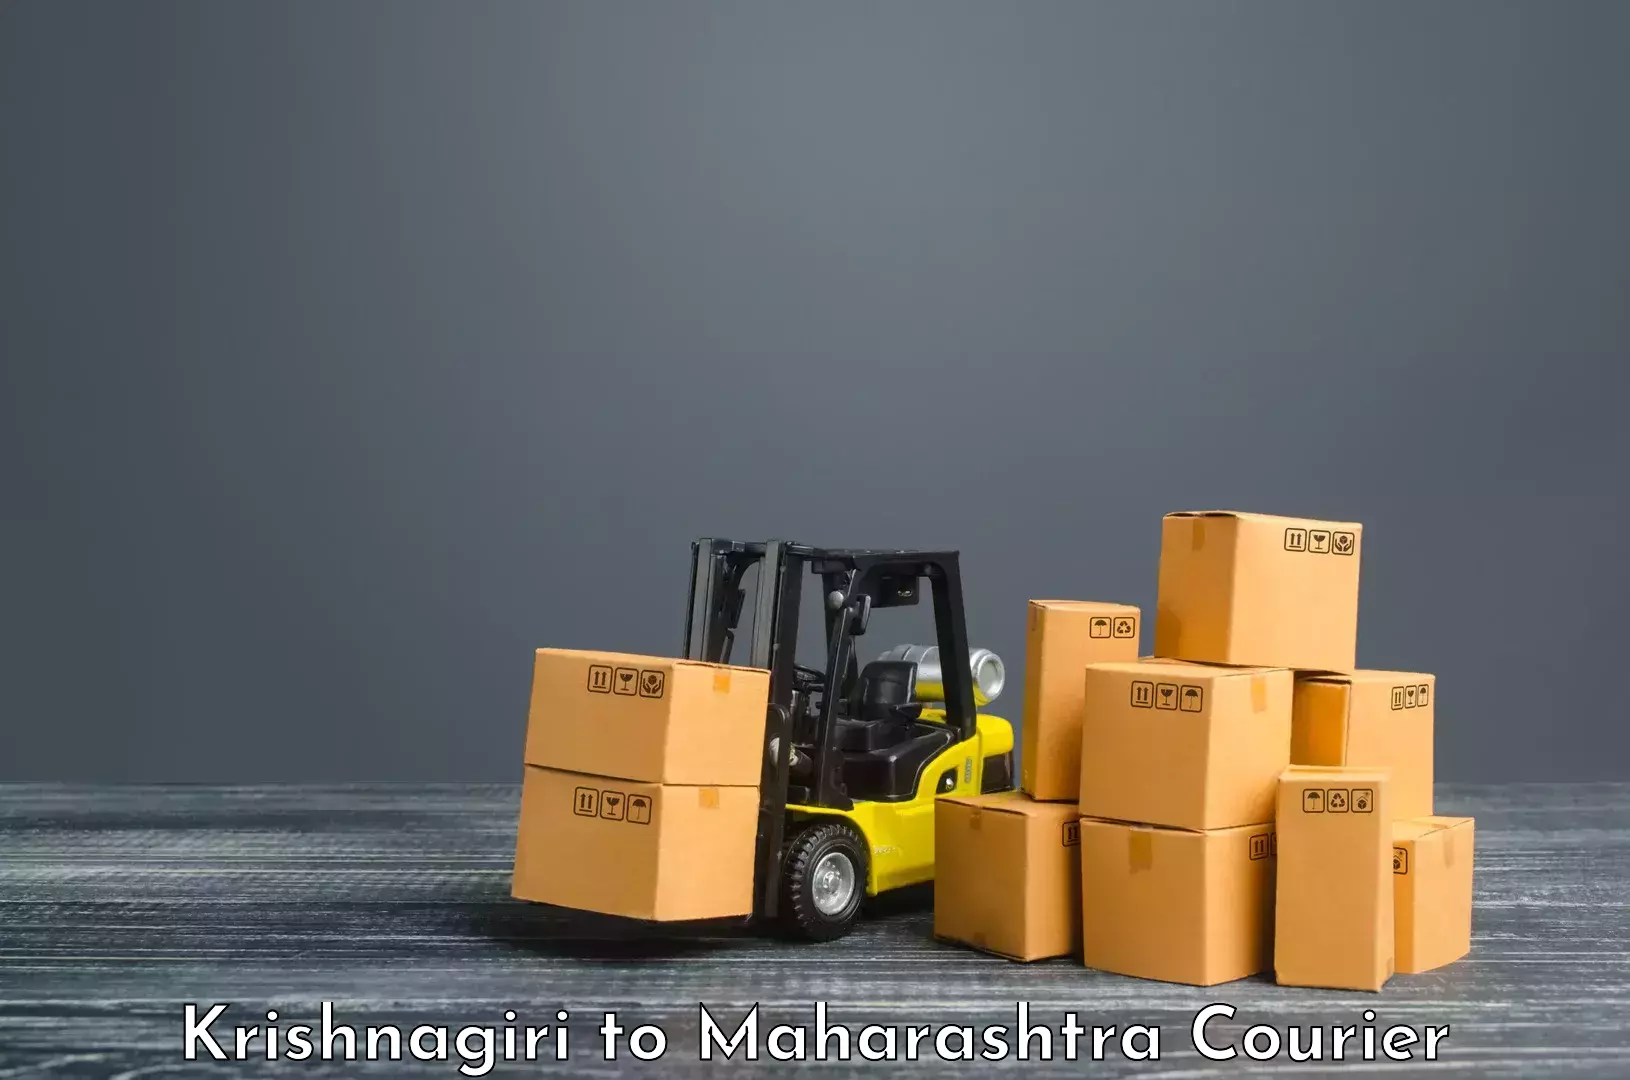 Global shipping solutions Krishnagiri to Mumbai Port